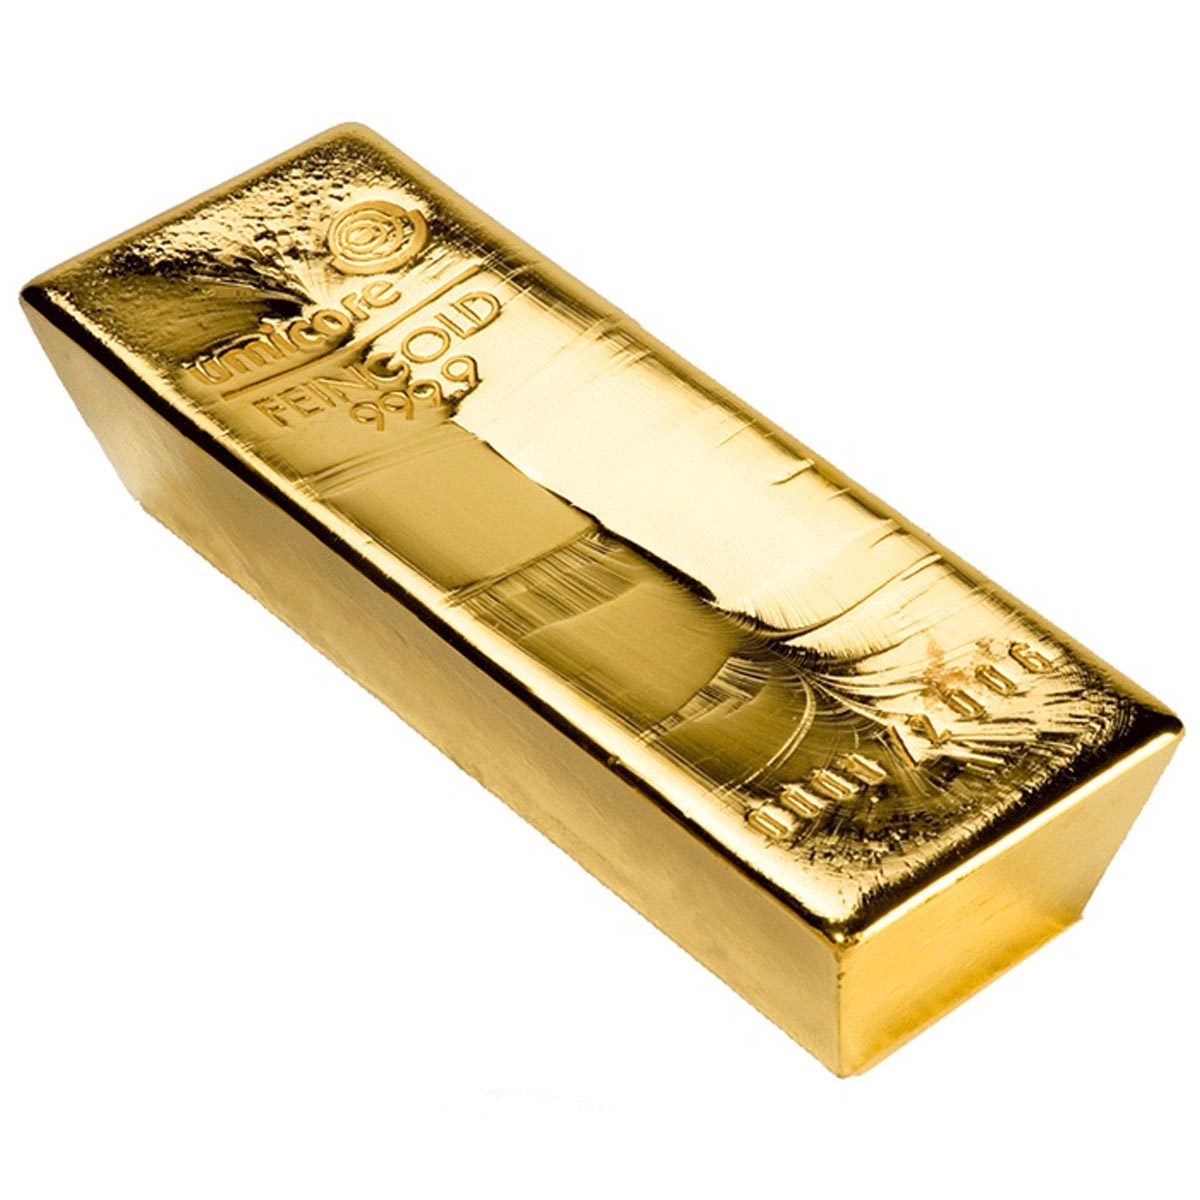 5 5 килограммов золота. Слиток золота 12 кг. Слиток золота 400 унций. Слиток золота 13300. Слиток золота 12.5 кг.